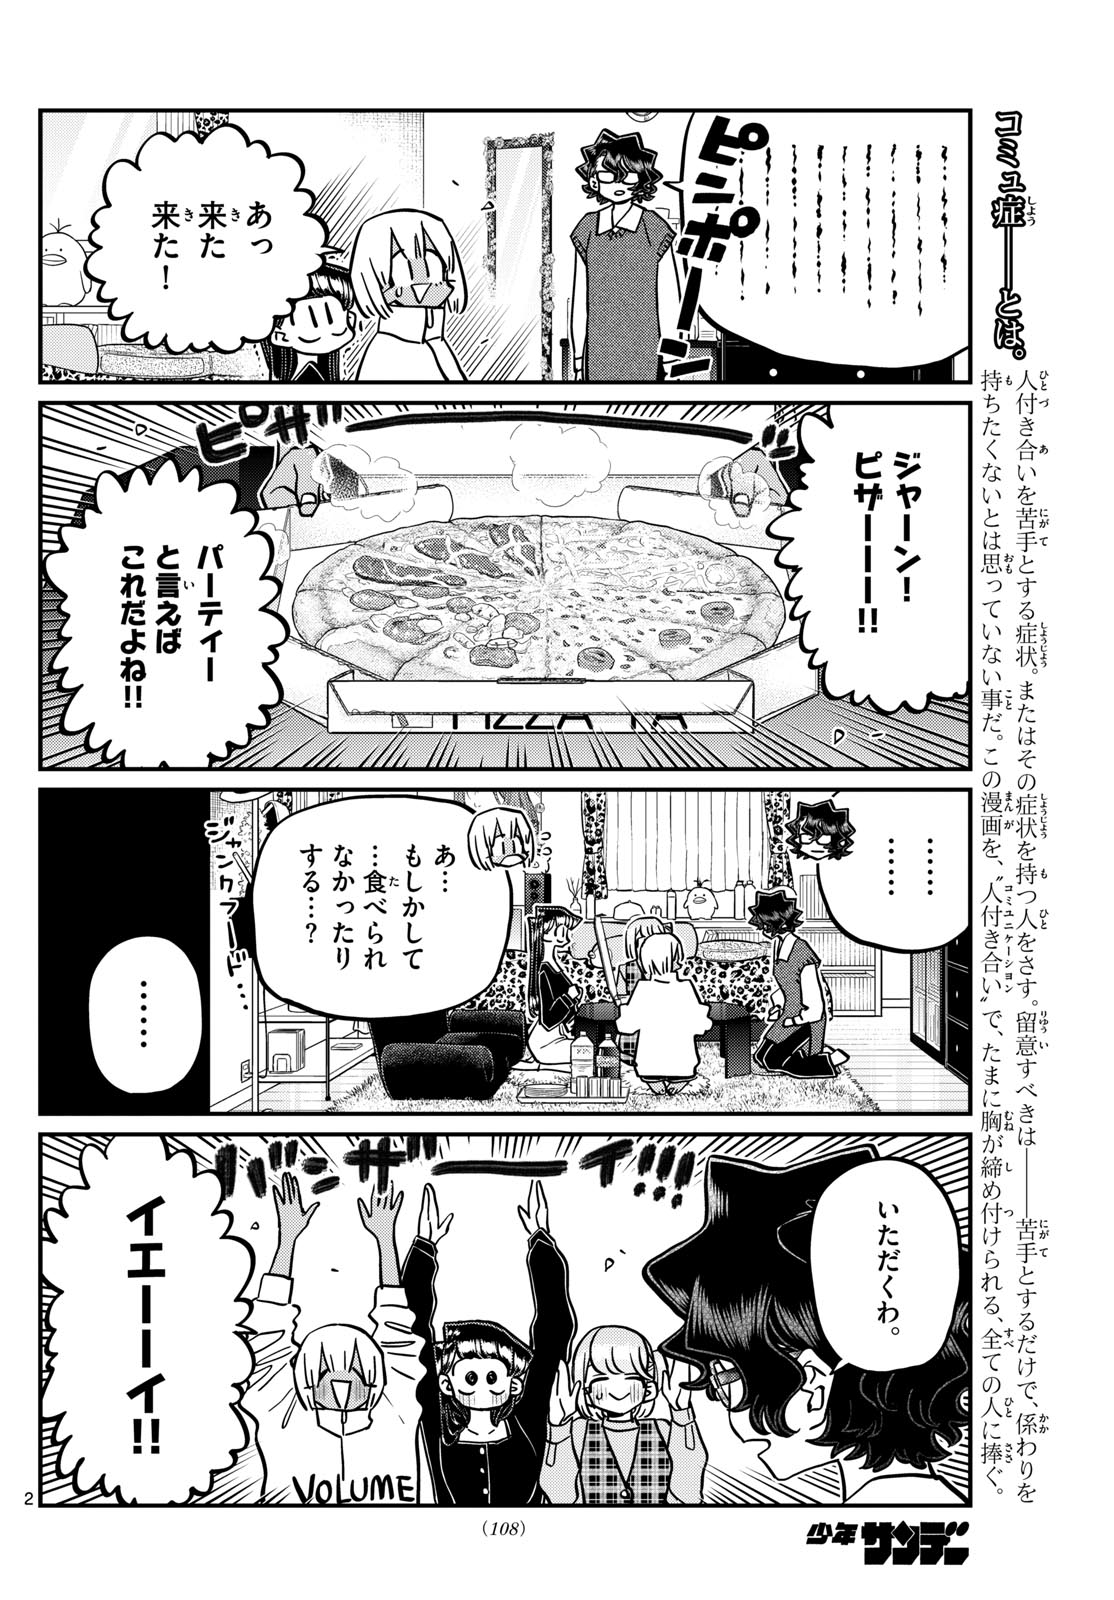 Komi-san wa Komyushou Desu - Chapter 442 - Page 2